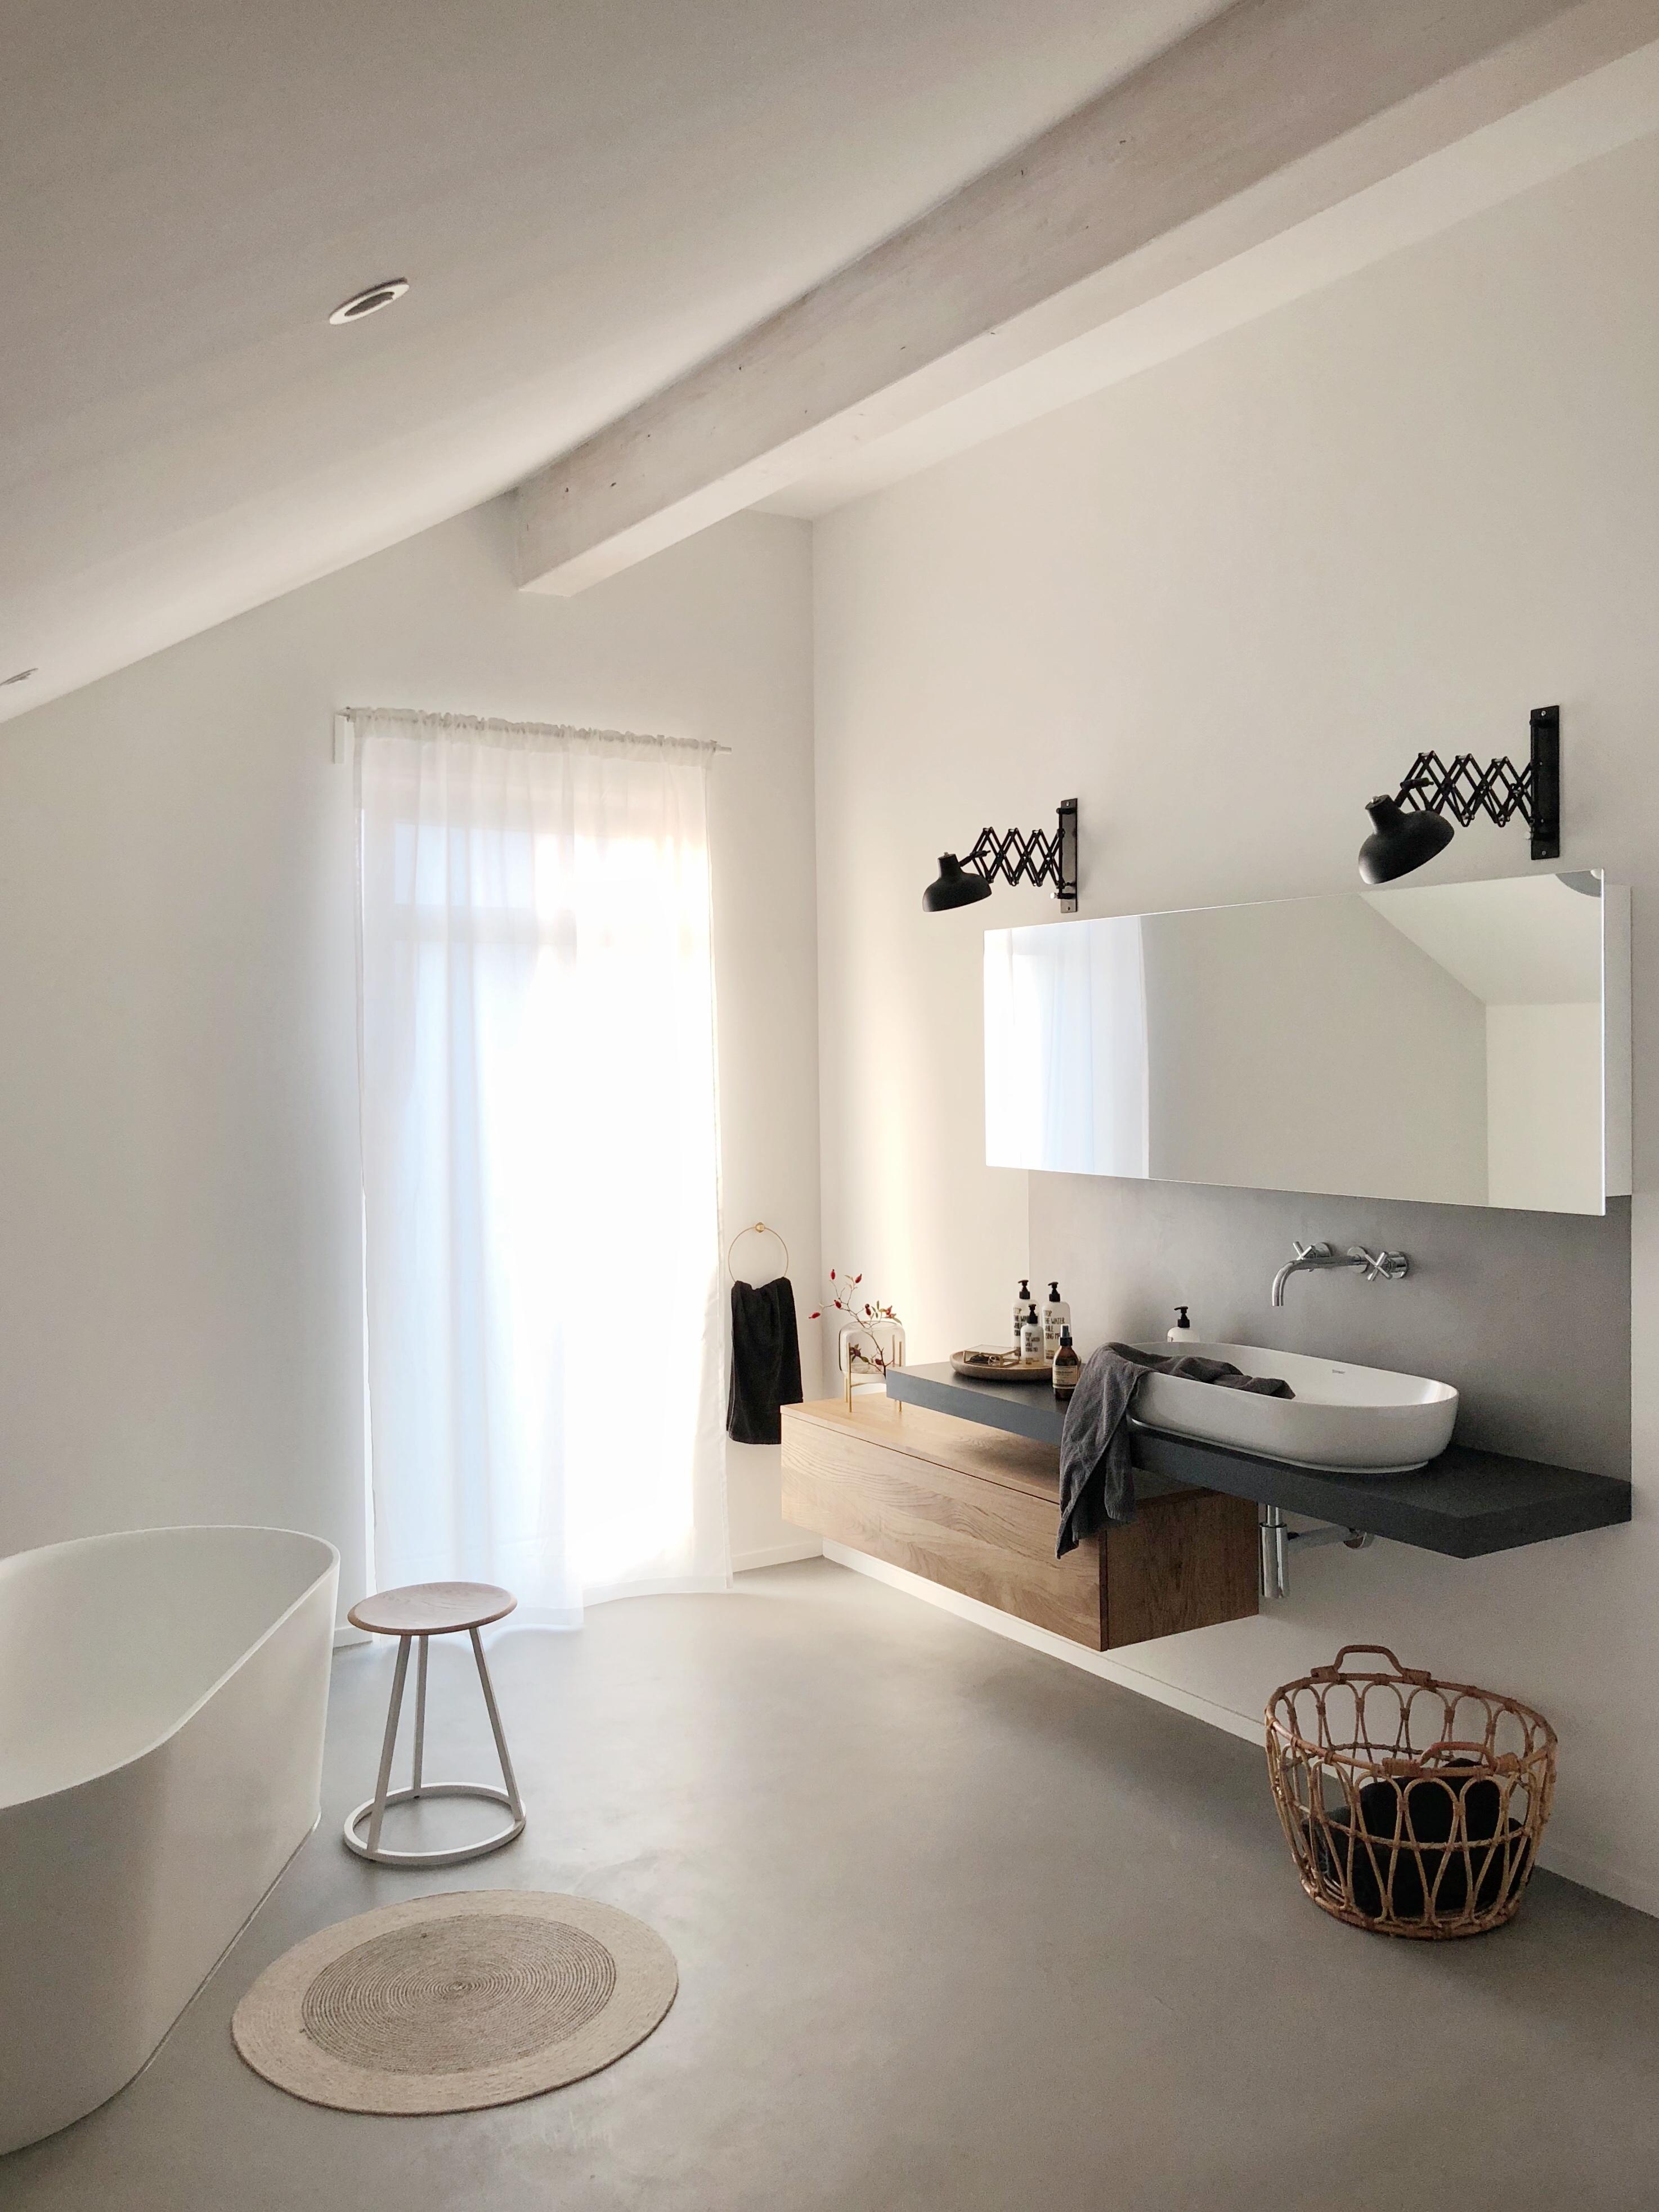 Unser minimalistisches Badezimmer
#bathroom#badezimmer#pure